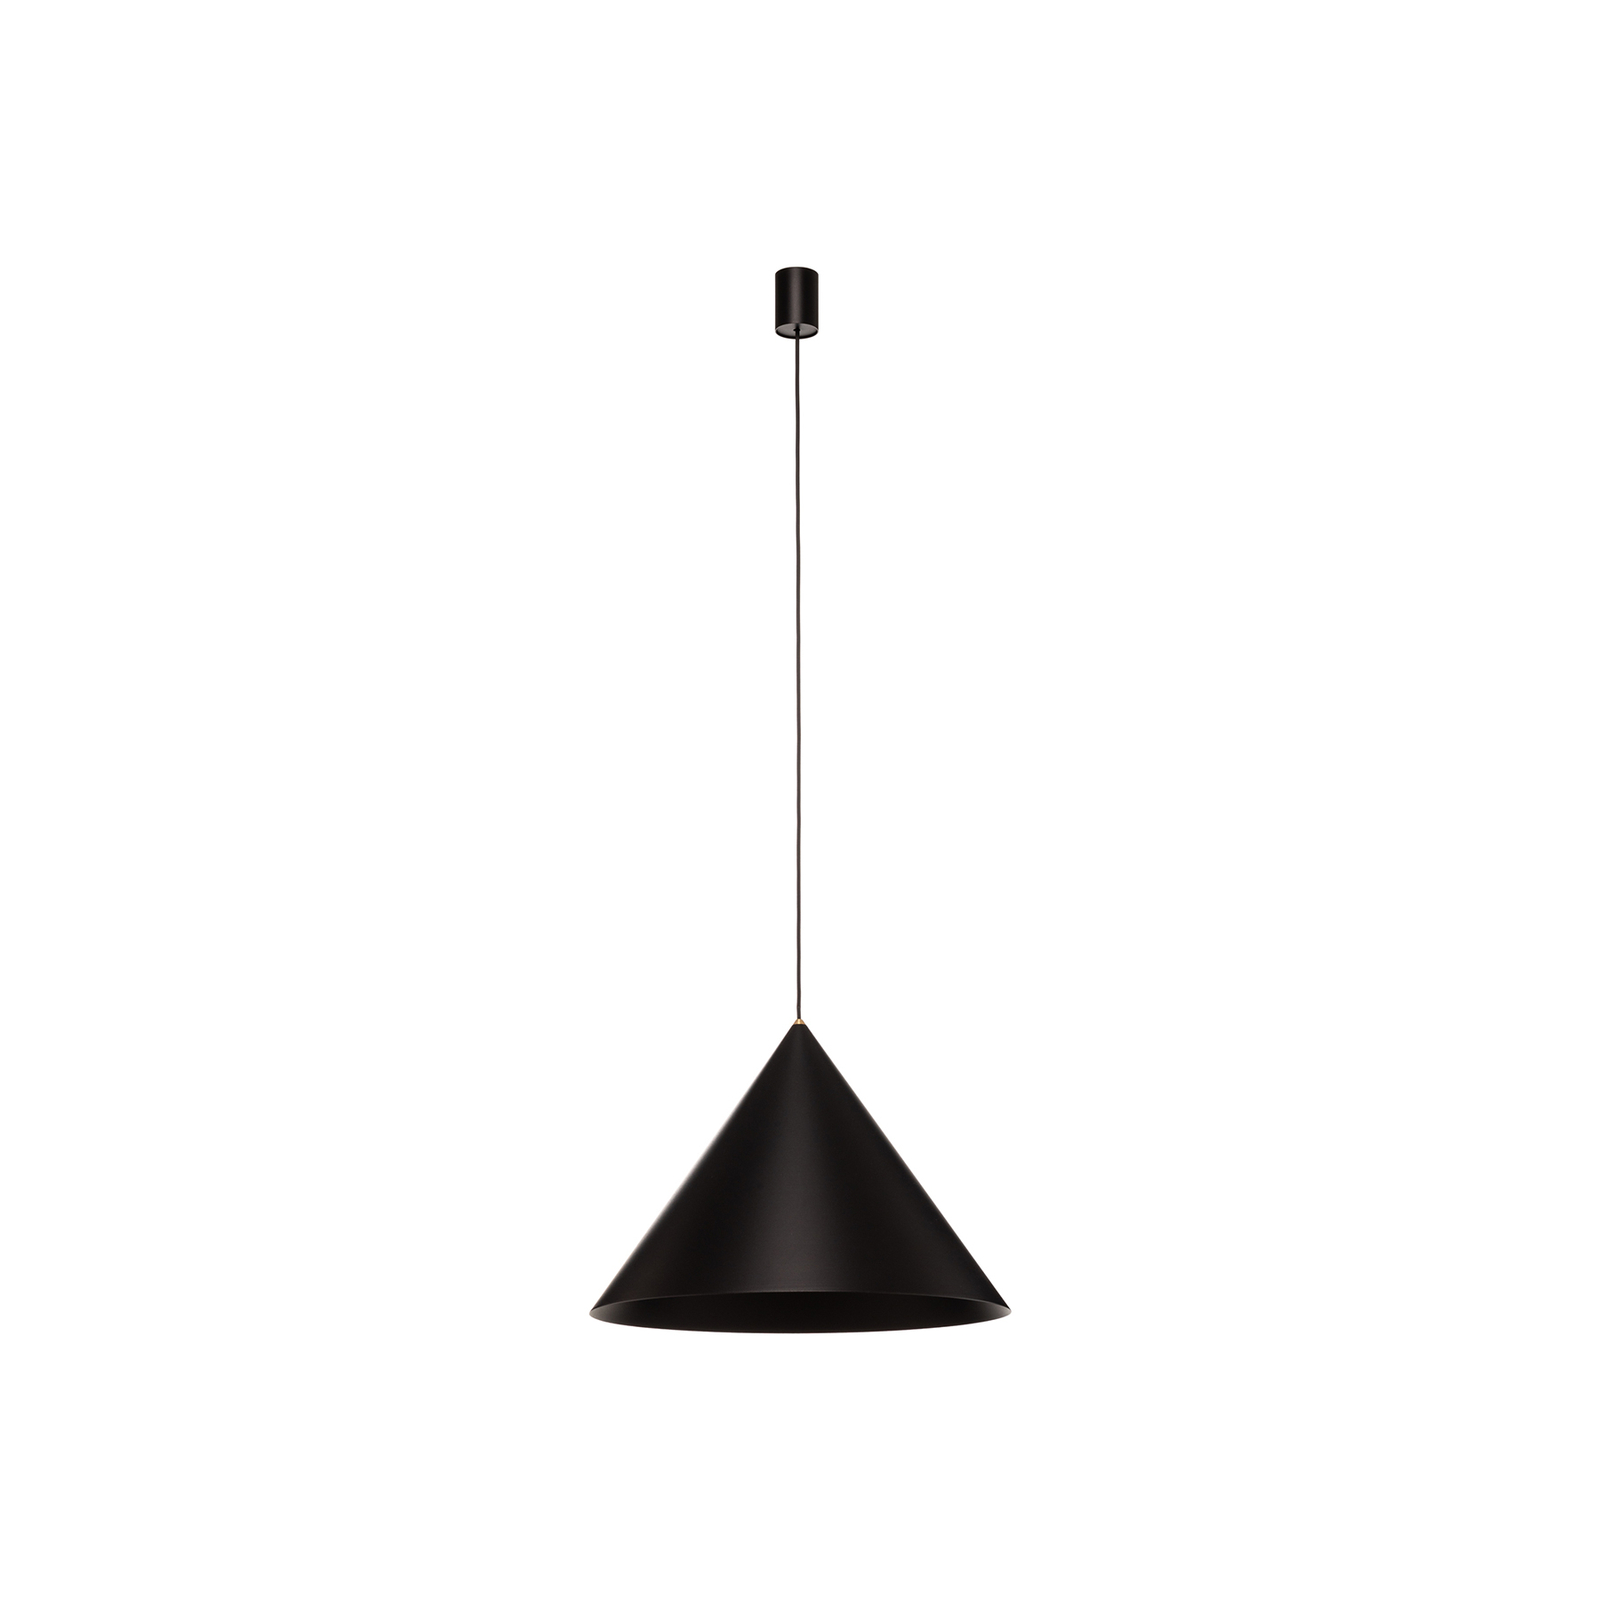 Metalen hanglamp Zenith L in zwart